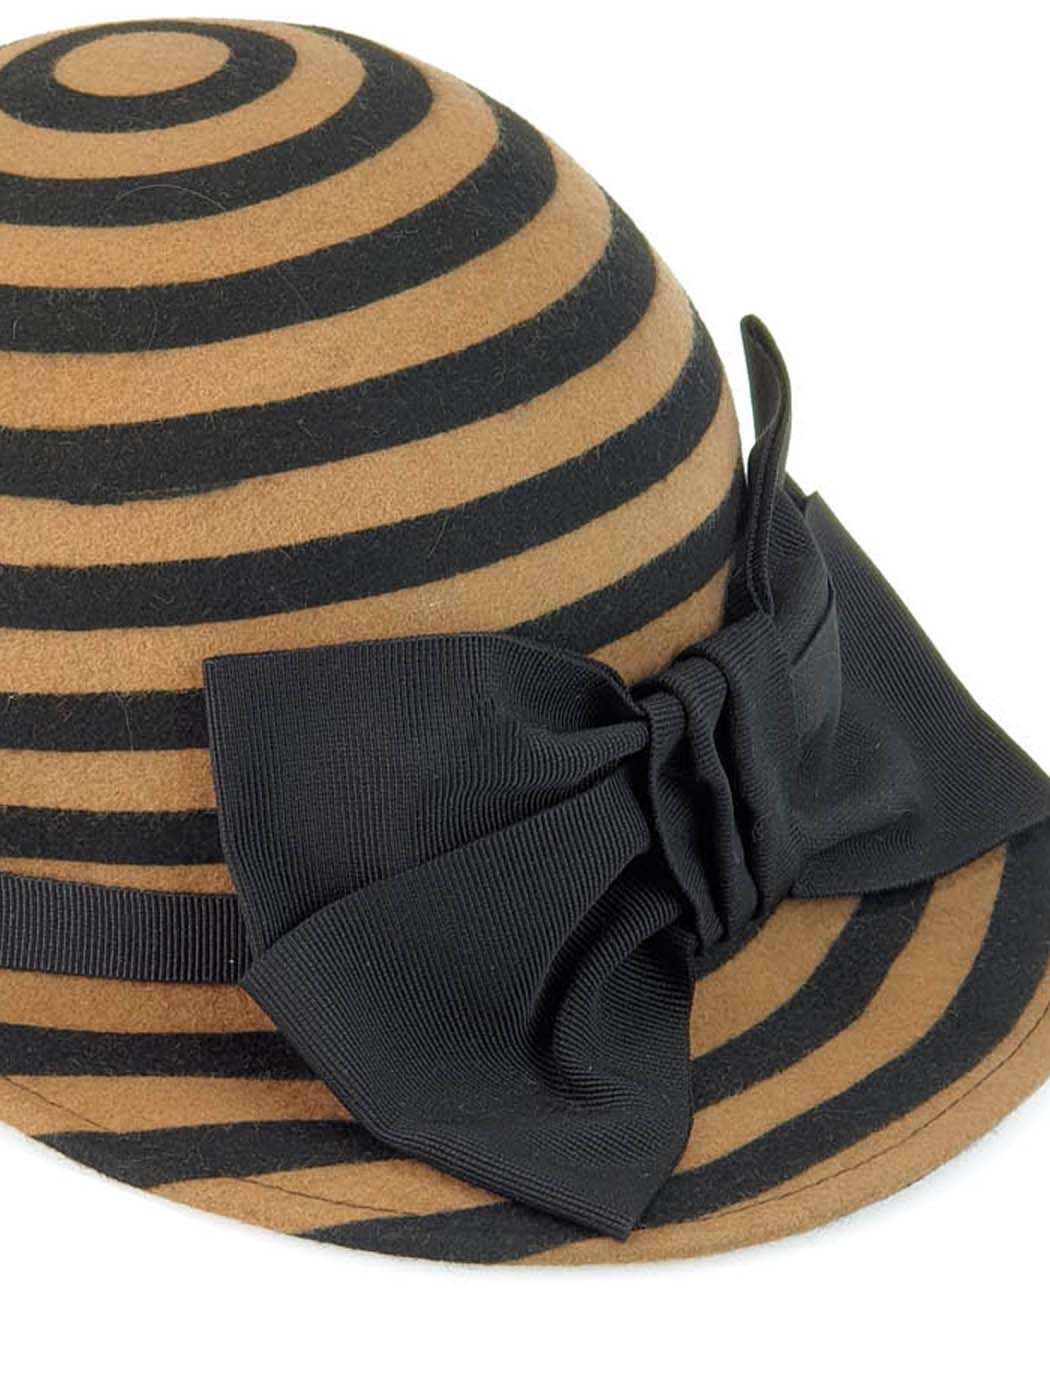 Wool Hat Jockey Rige black & camel-W339